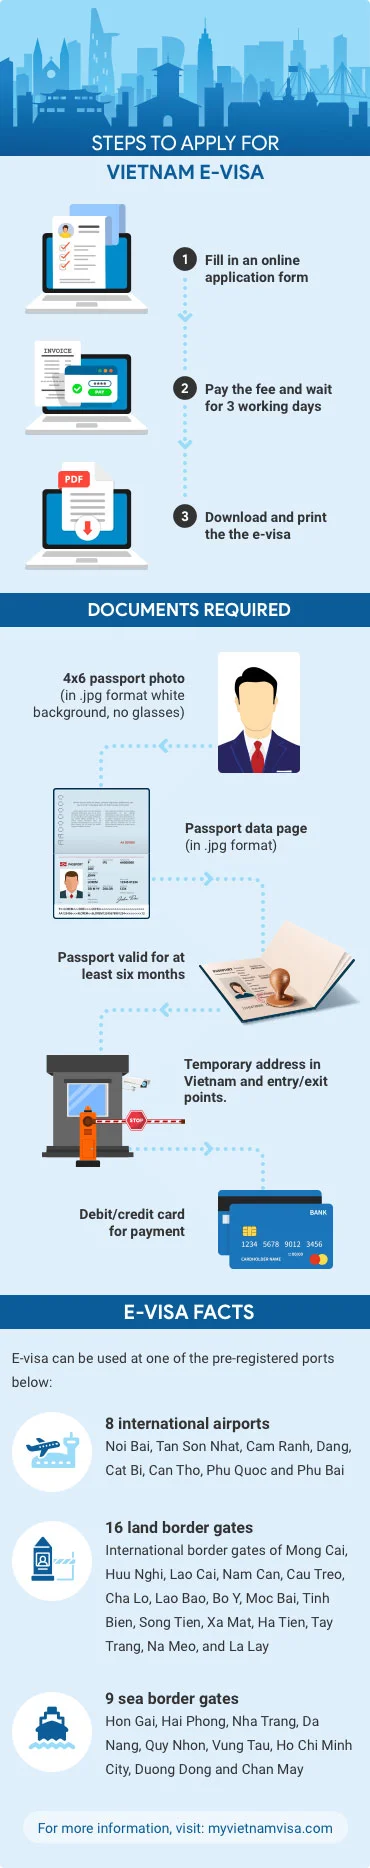 Vietnam Multiple Entry Visa Types